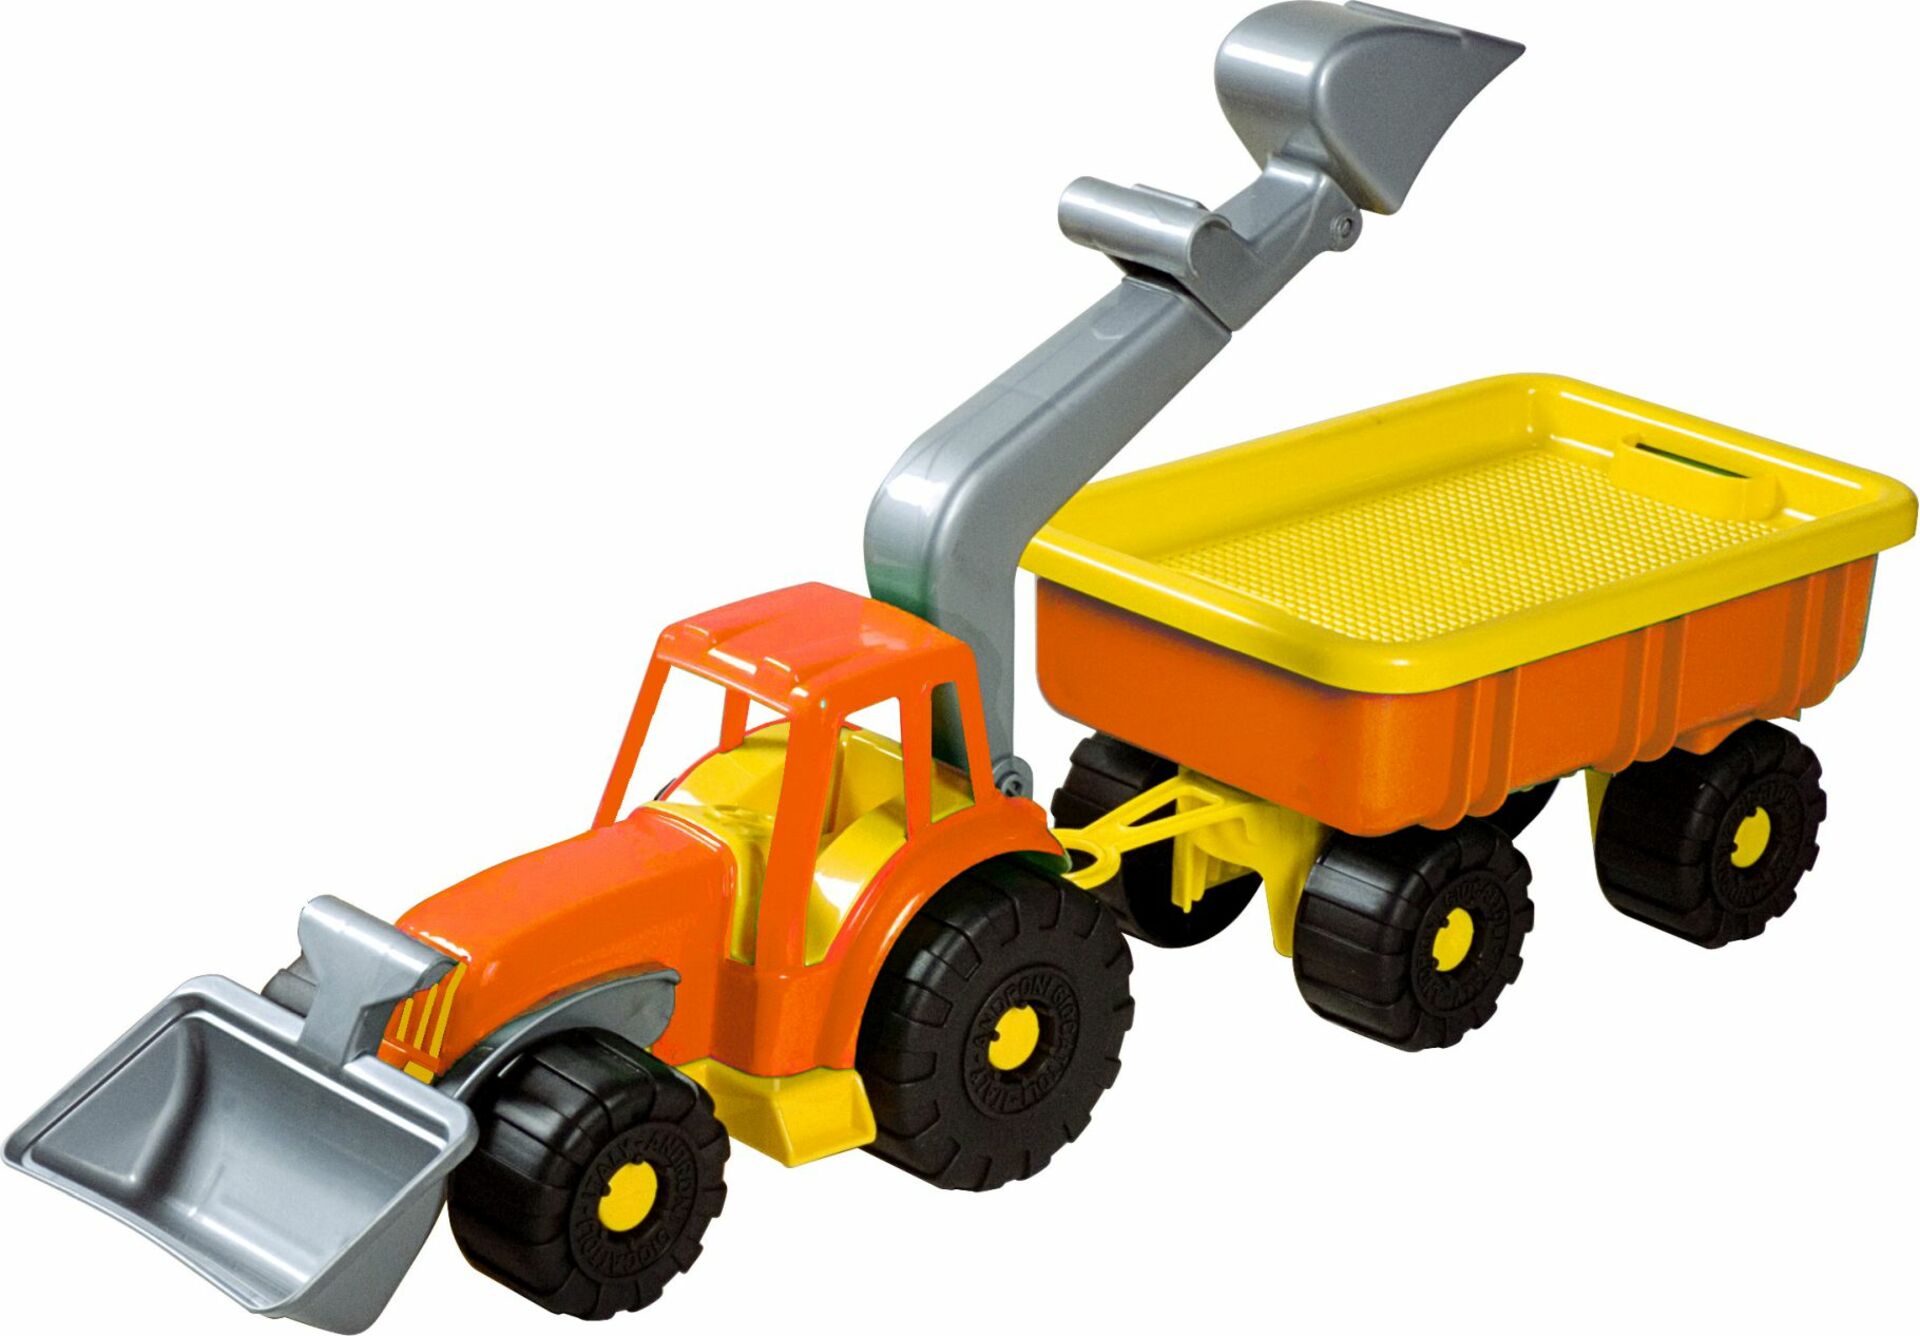 Androni Traktorový nakladač s vlekem Power Worker - délka 58 cm, oranžový